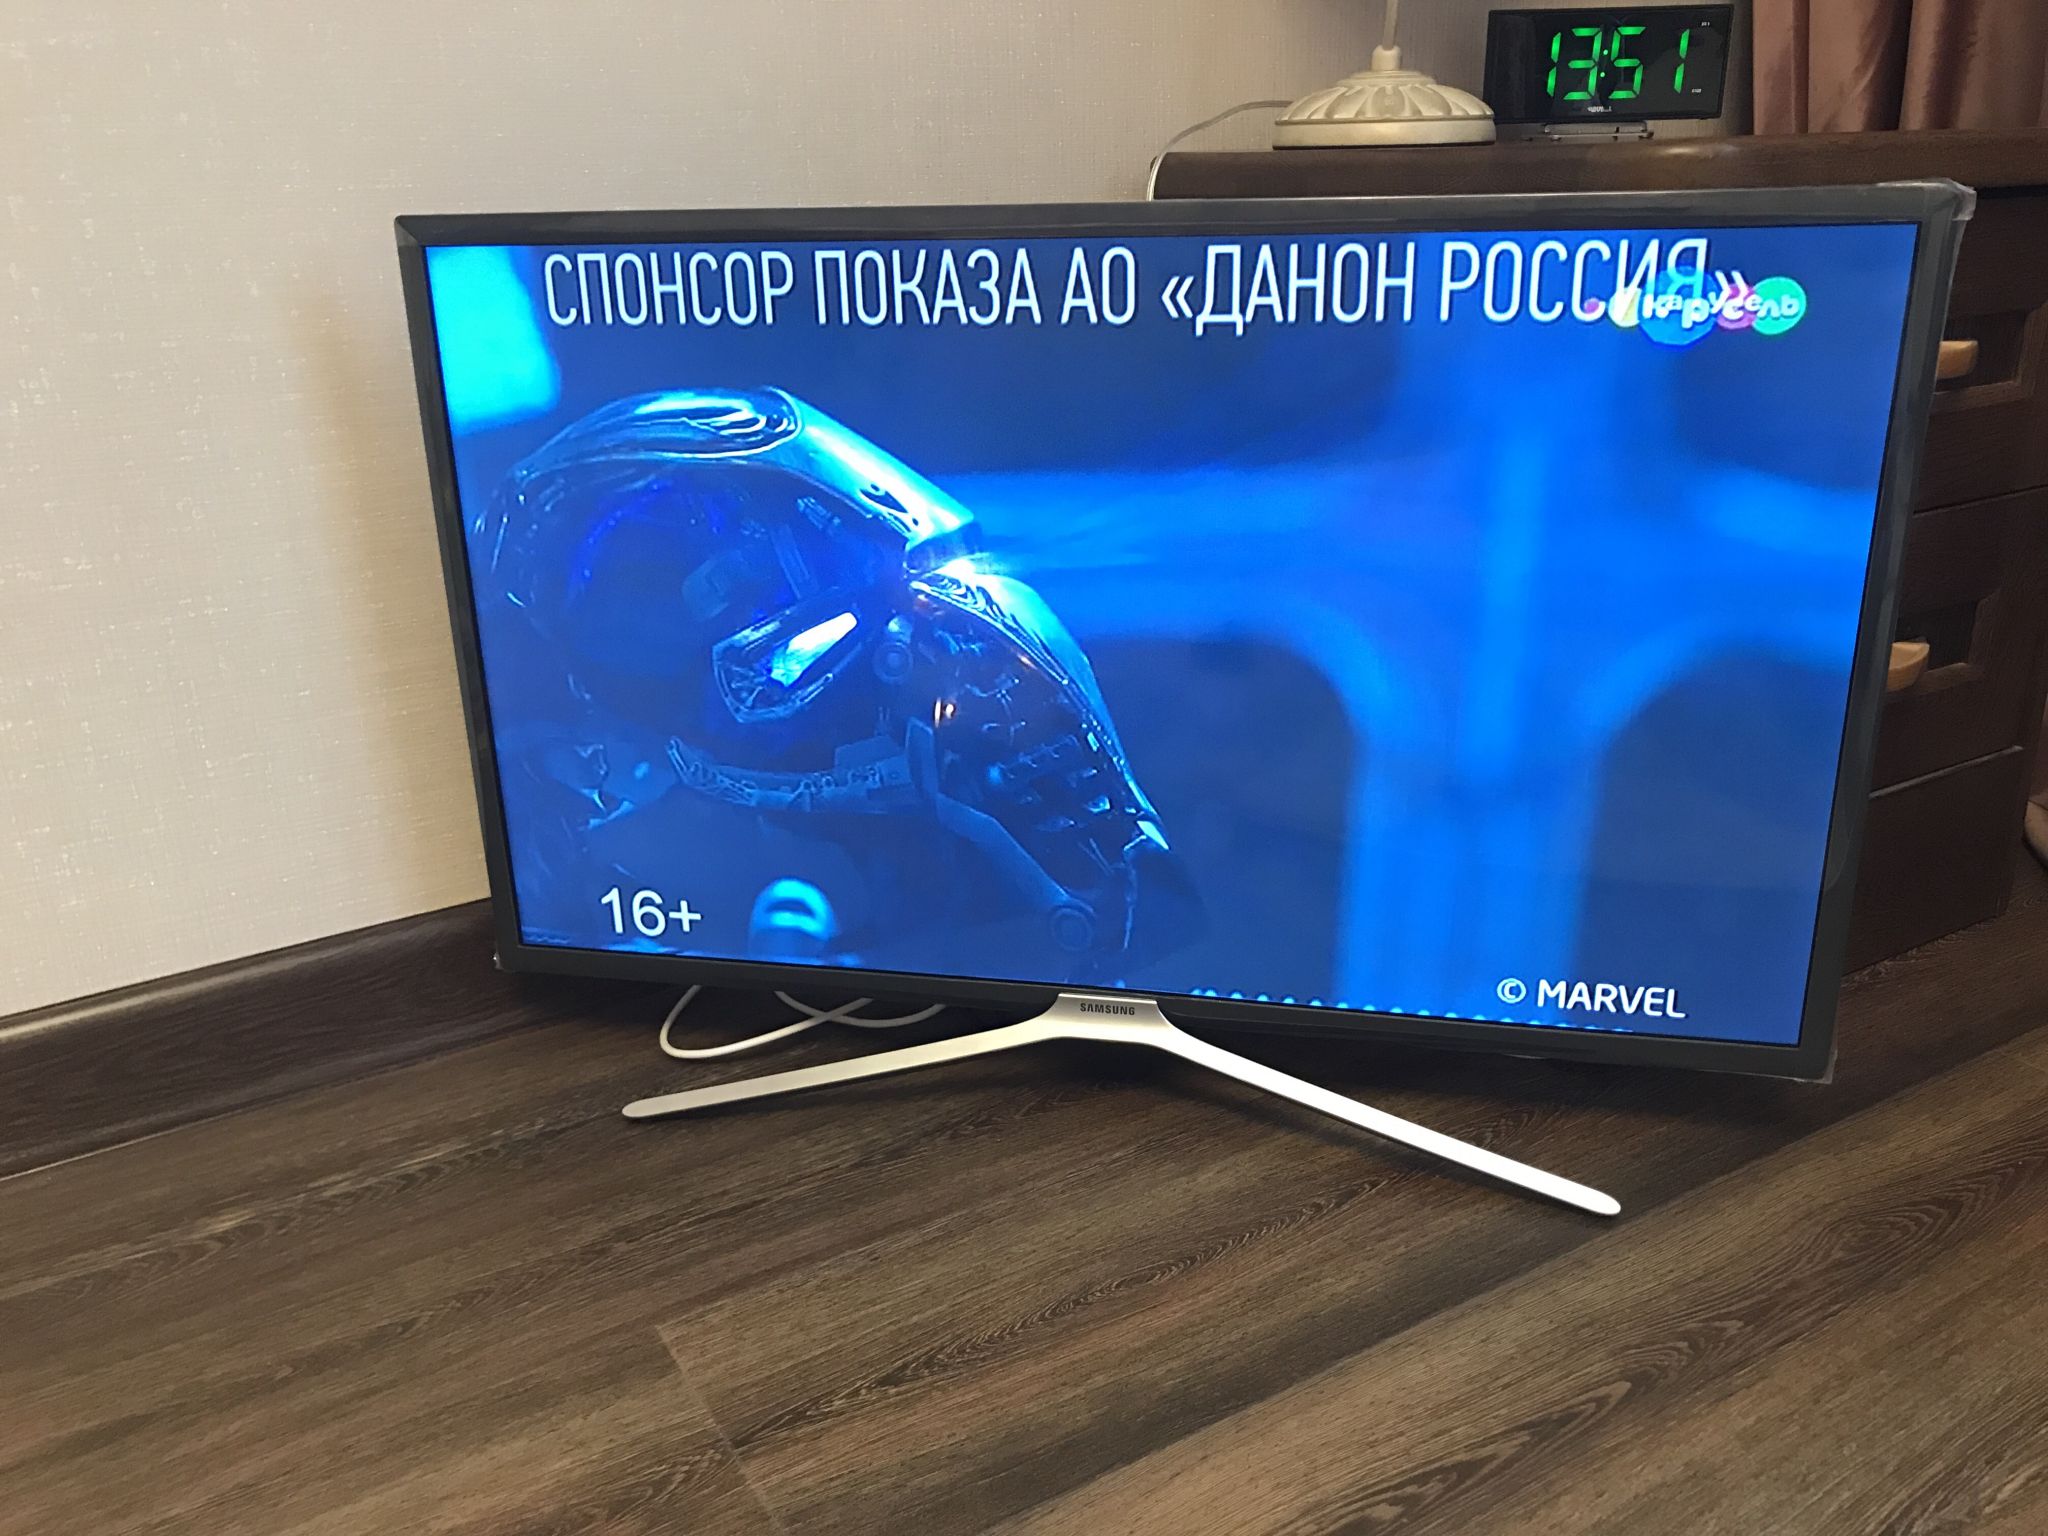 Ue32m5550auxru Купить В Москве Телевизор Самсунг